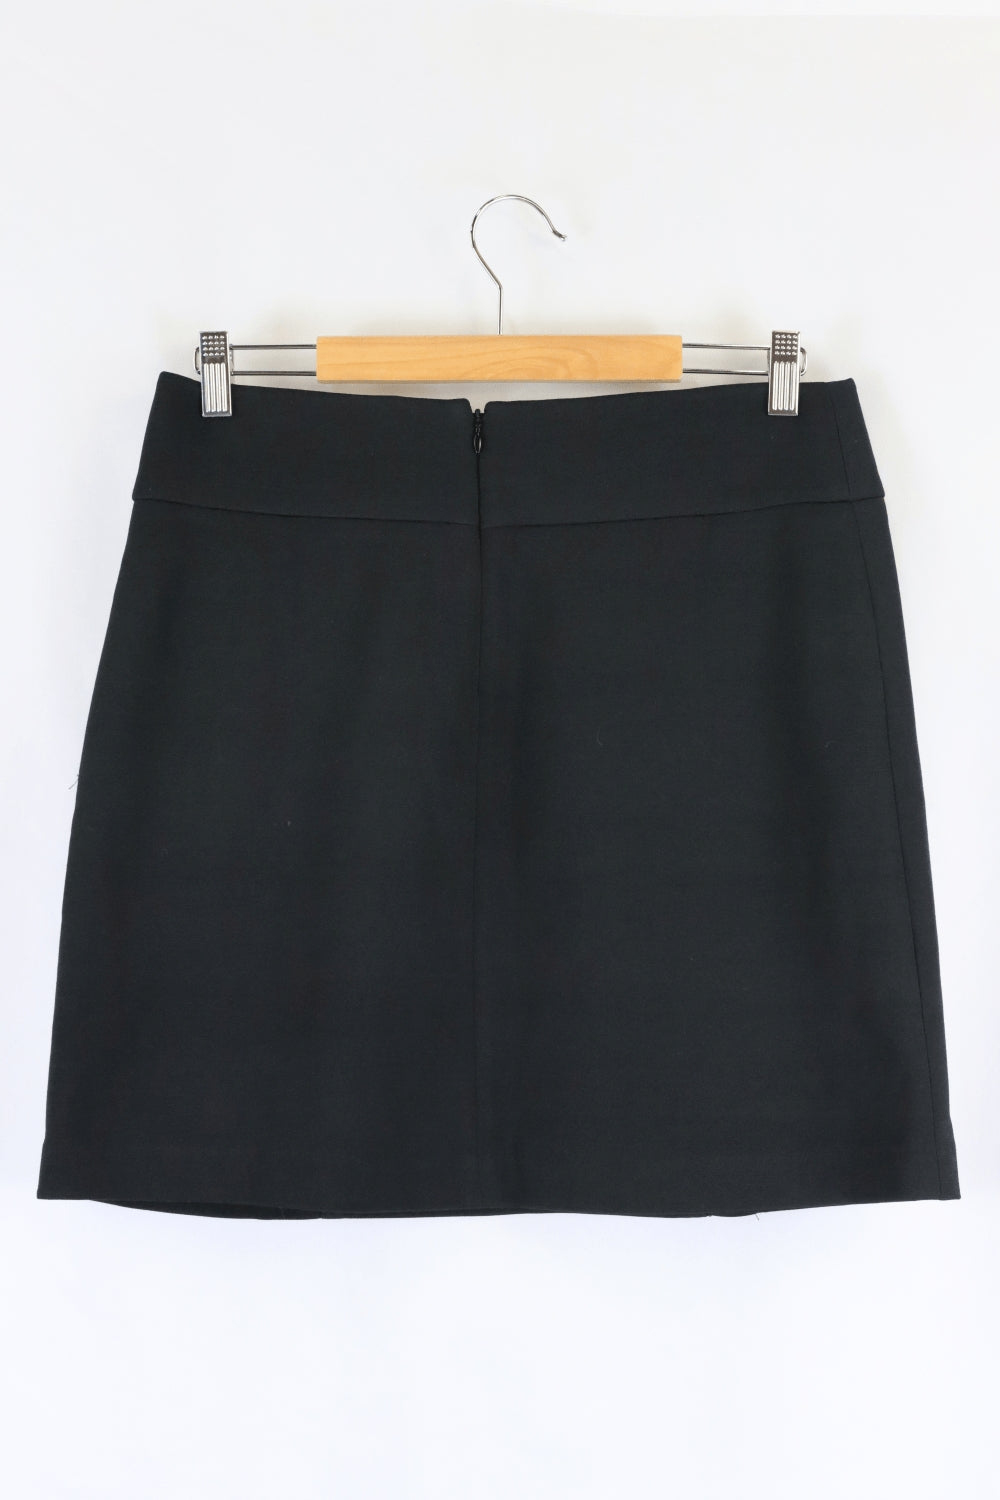 Basque Black Mini Skirt 10